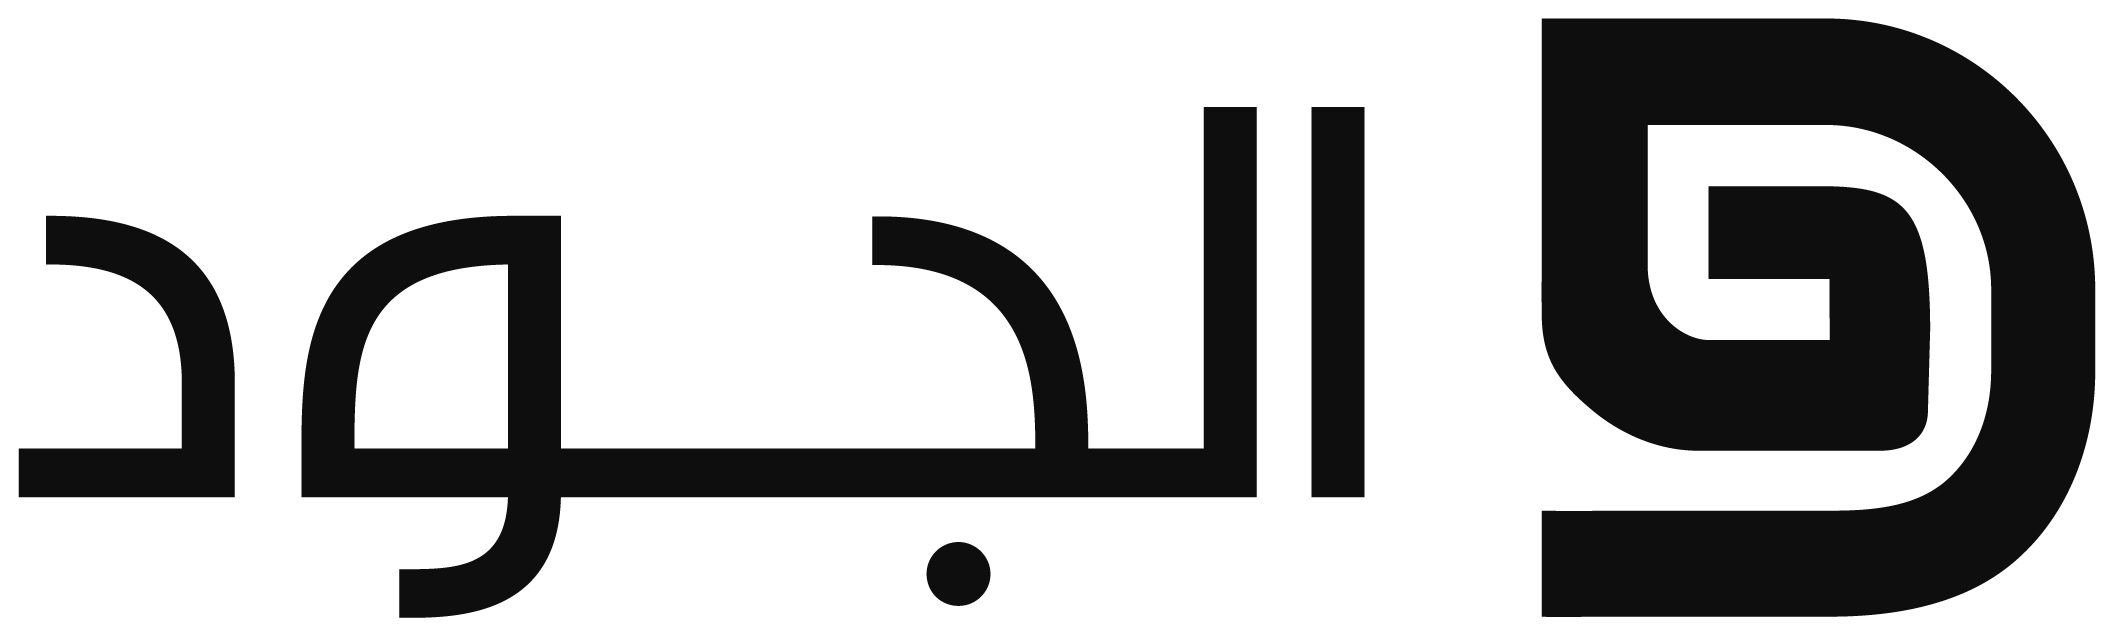 AlJude Logo- Almost Black